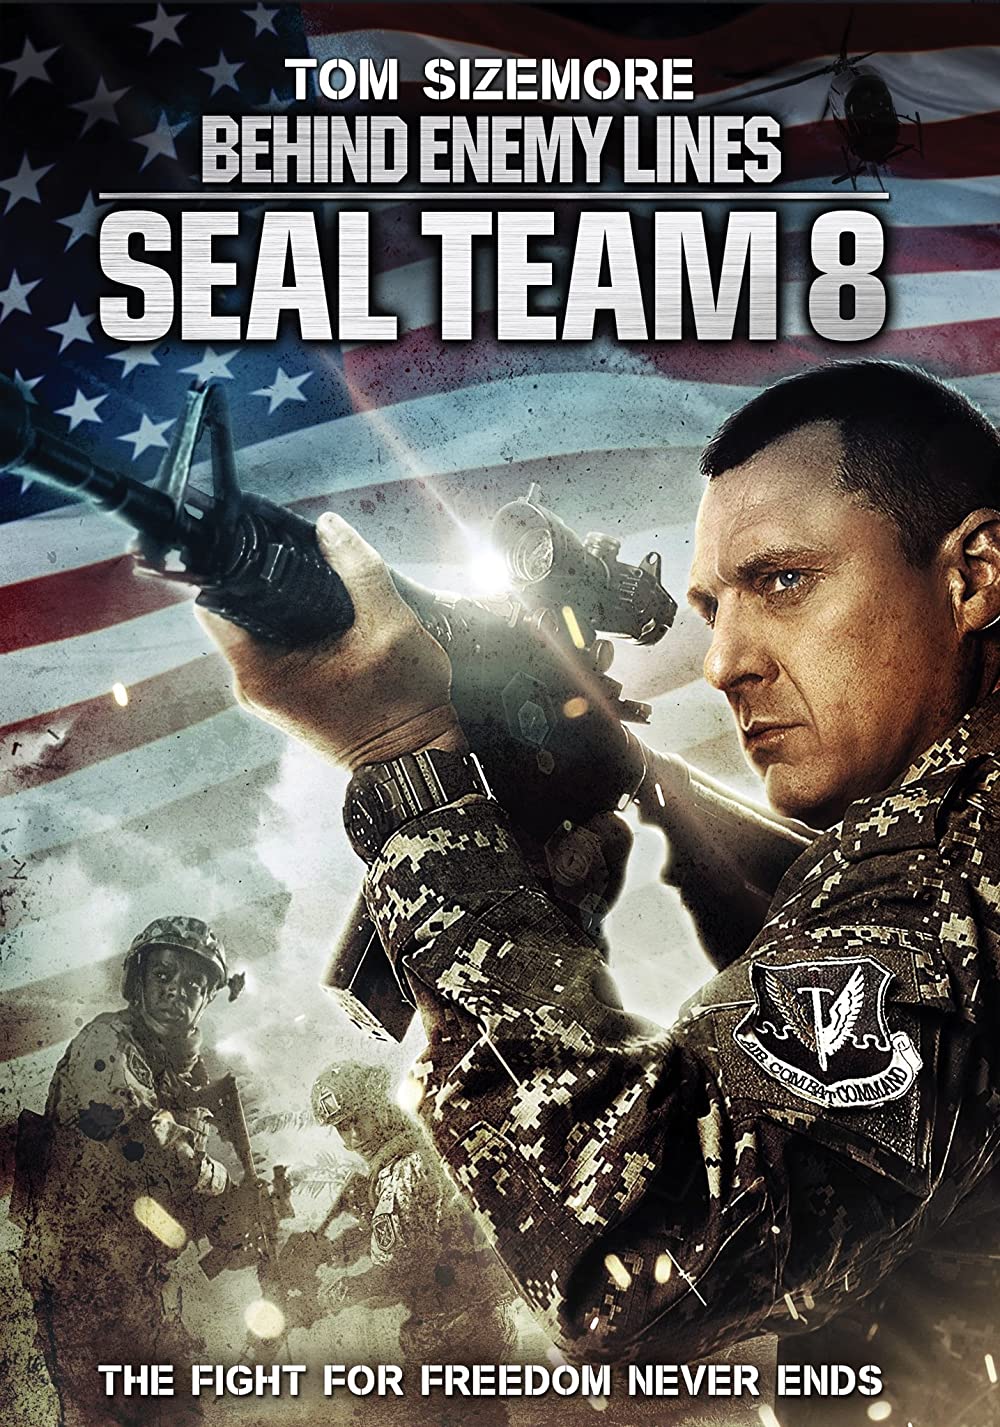 ดูหนังออนไลน์ฟรี Seal Team Eight Behind Enemy Lines 4 (2014) บีไฮด์ เอนิมี ไลนส์ 4 ปฏิบัติการหน่วยซีลยึดนรก หนังเต็มเรื่อง หนังมาสเตอร์ ดูหนังHD ดูหนังออนไลน์ ดูหนังใหม่